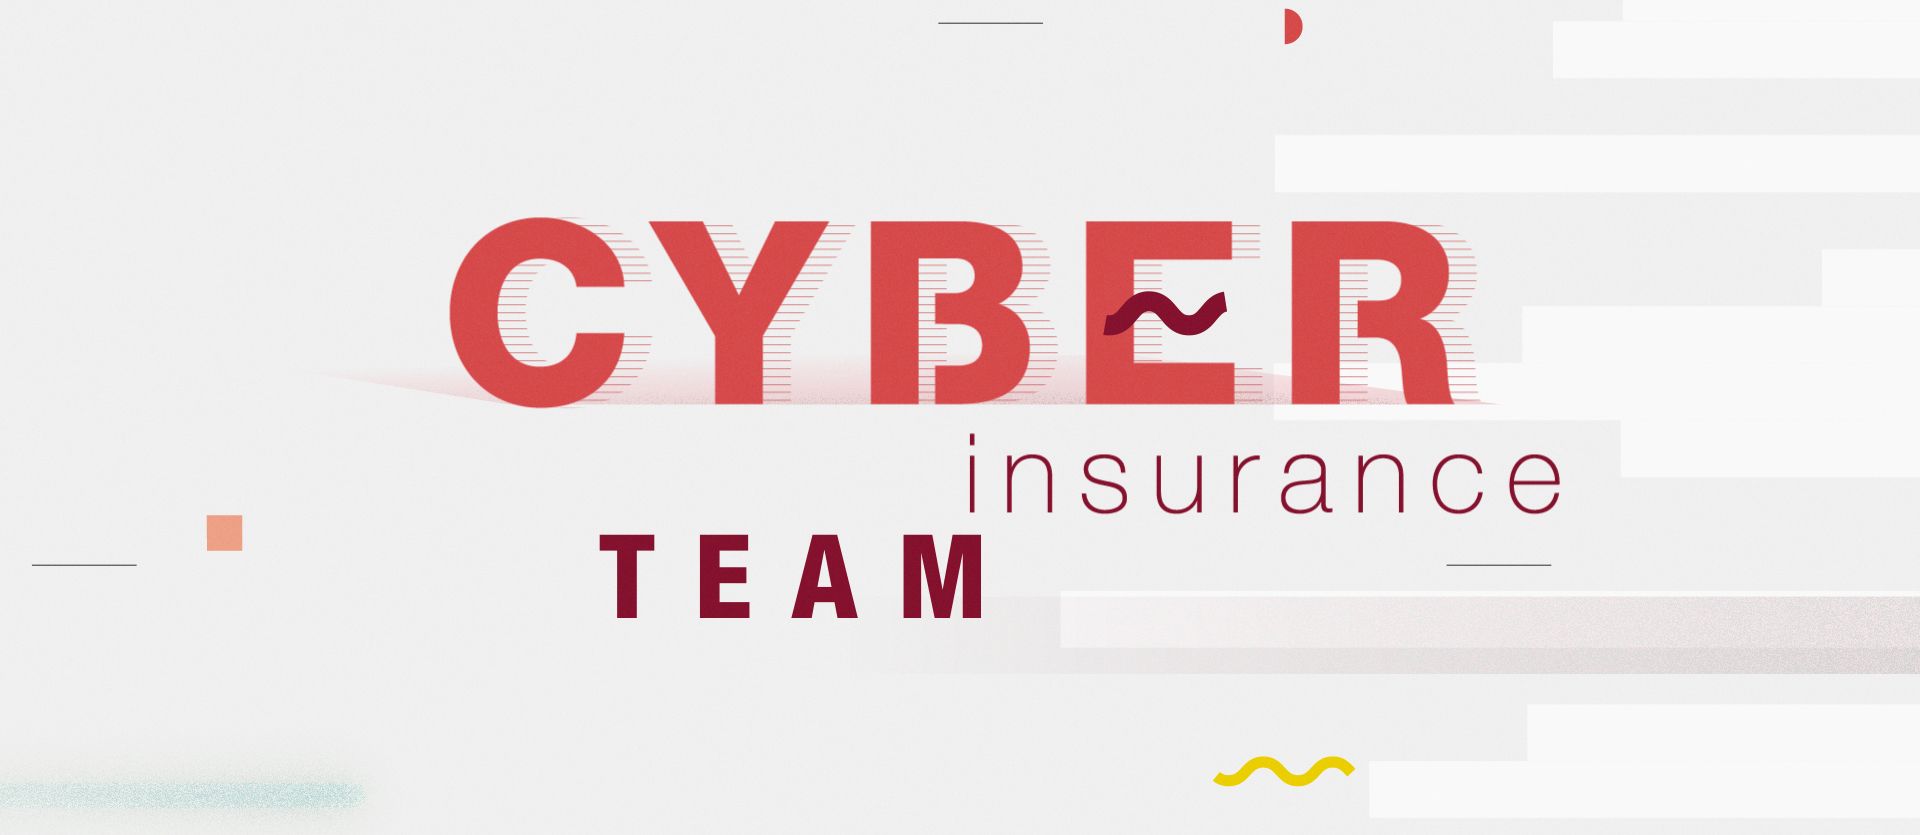 Generali lancia una funzione interamente dedicata alla Cyber Insurance e la start-up CyberSecurTech - Generali lancia una funzione dedicata alla Cyber Insurance e la start-up CyberSecurTech